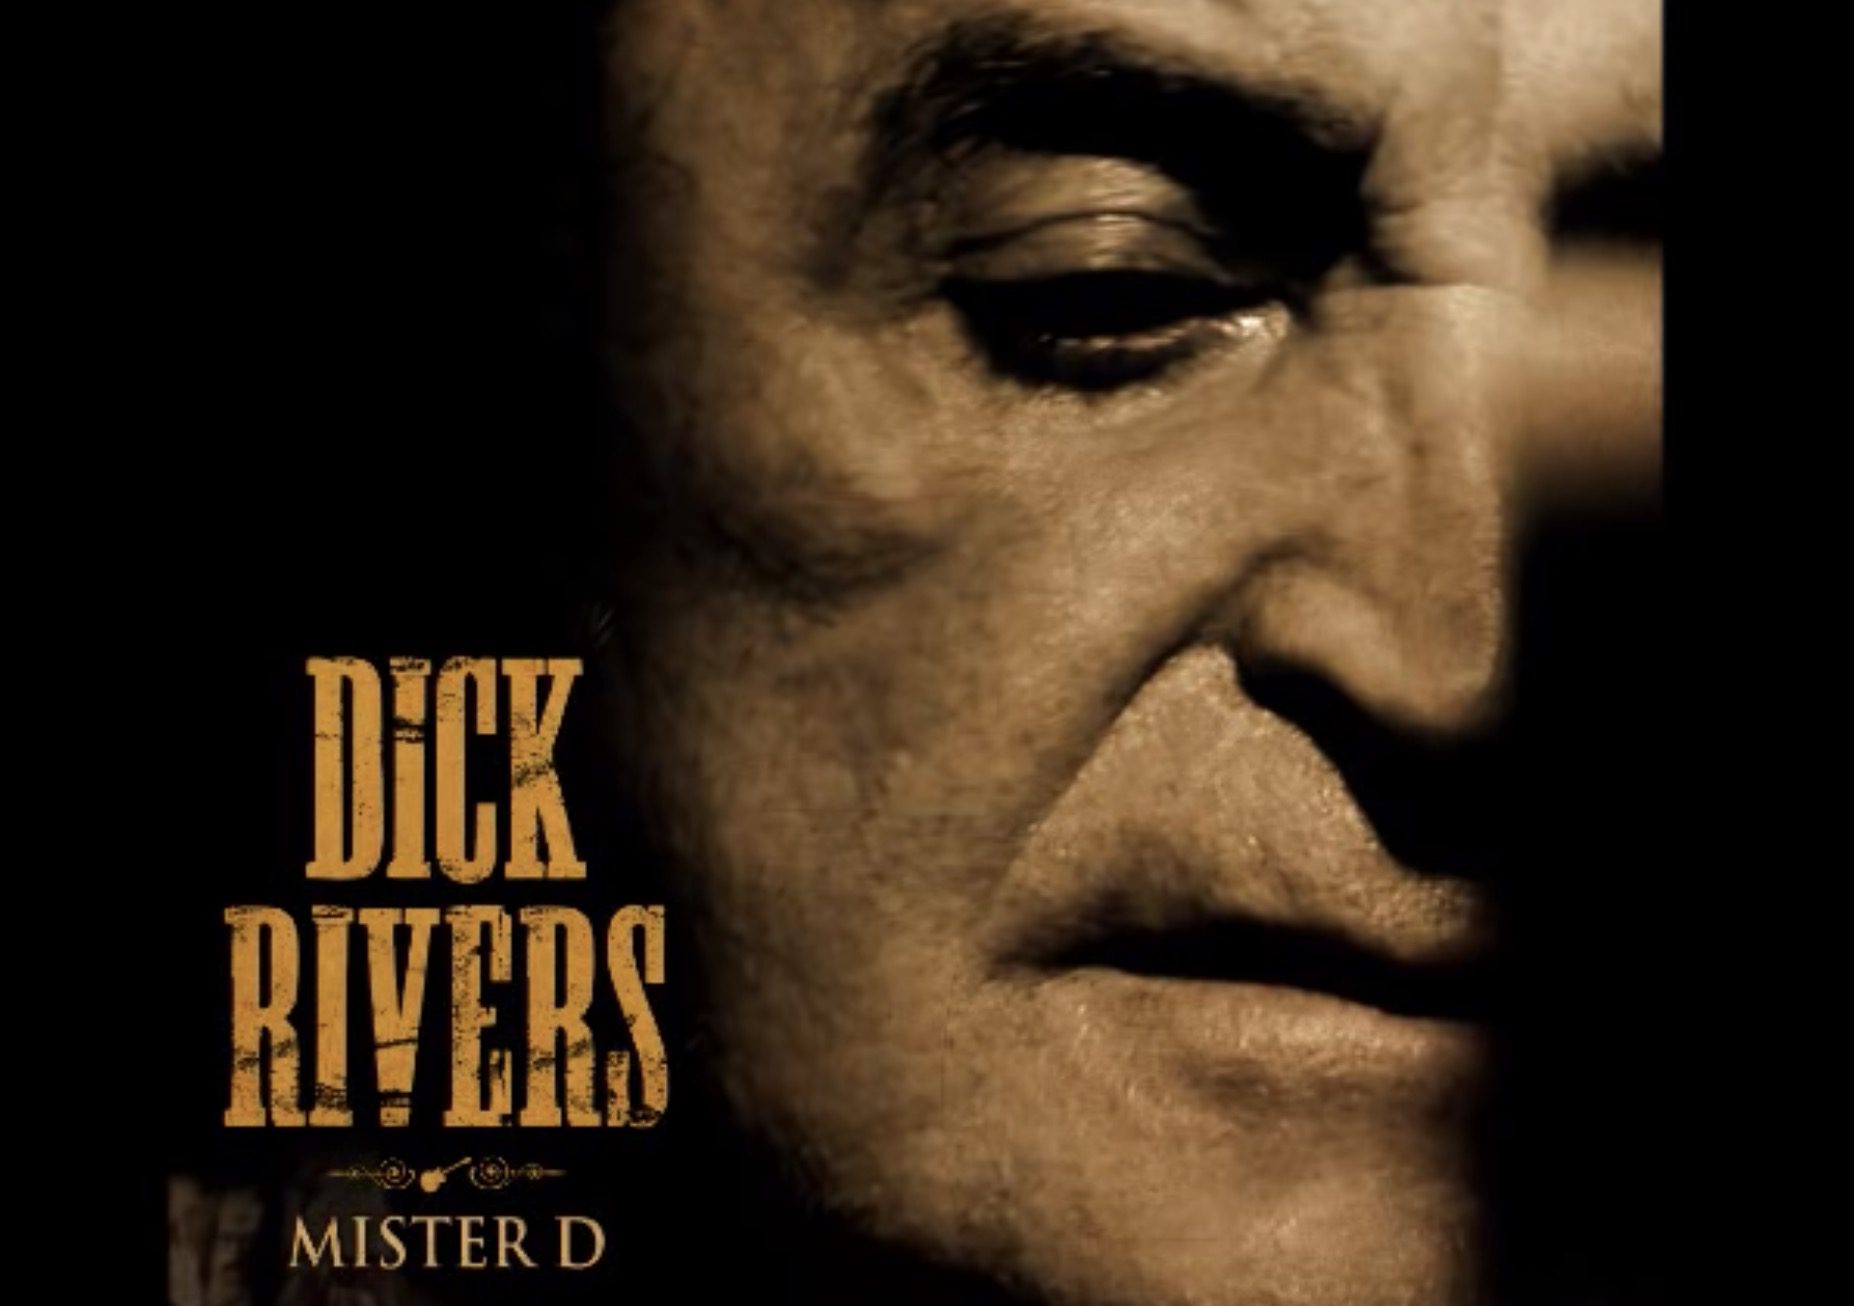 Triste nouvelle, le chanteur Dick Rivers est mort emporté par un cancer